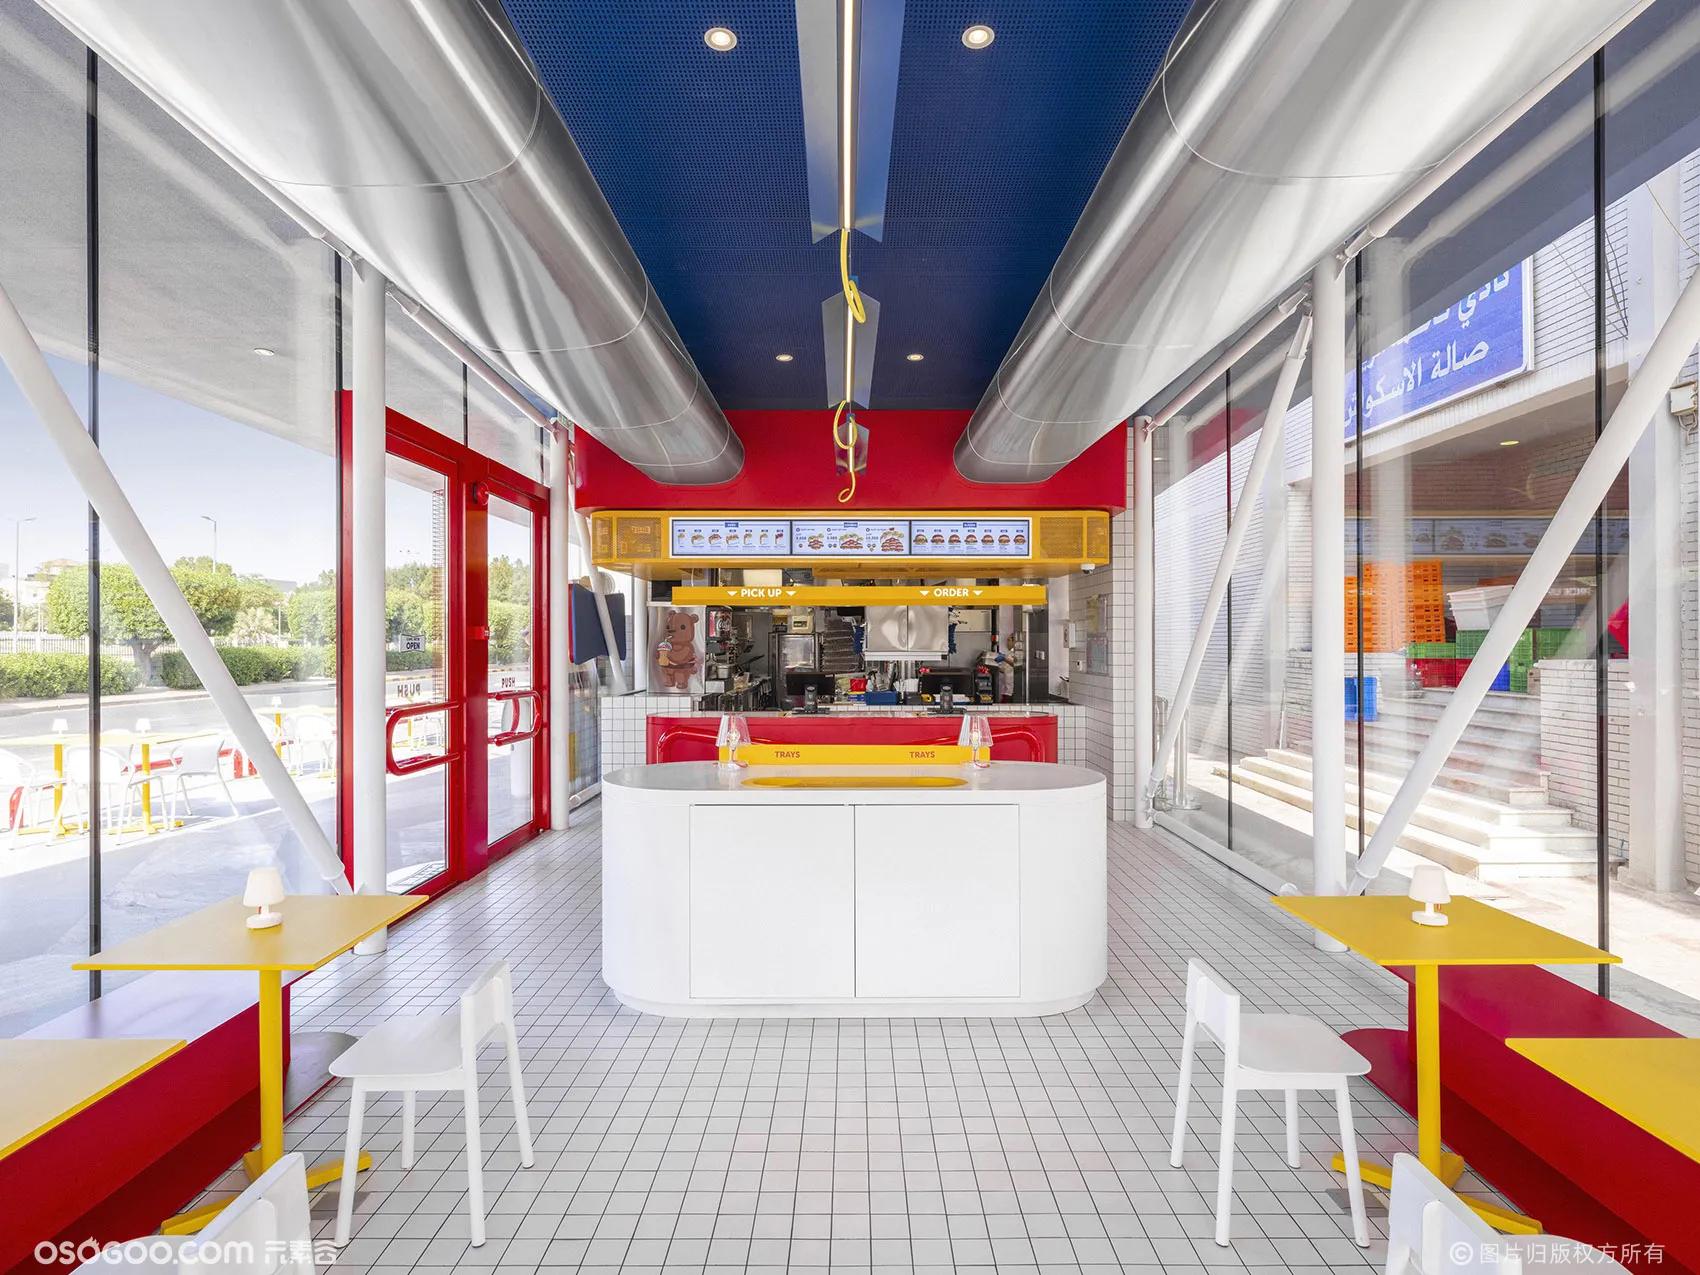 科威特·Pattie Pattie美式加州风汉堡店设计